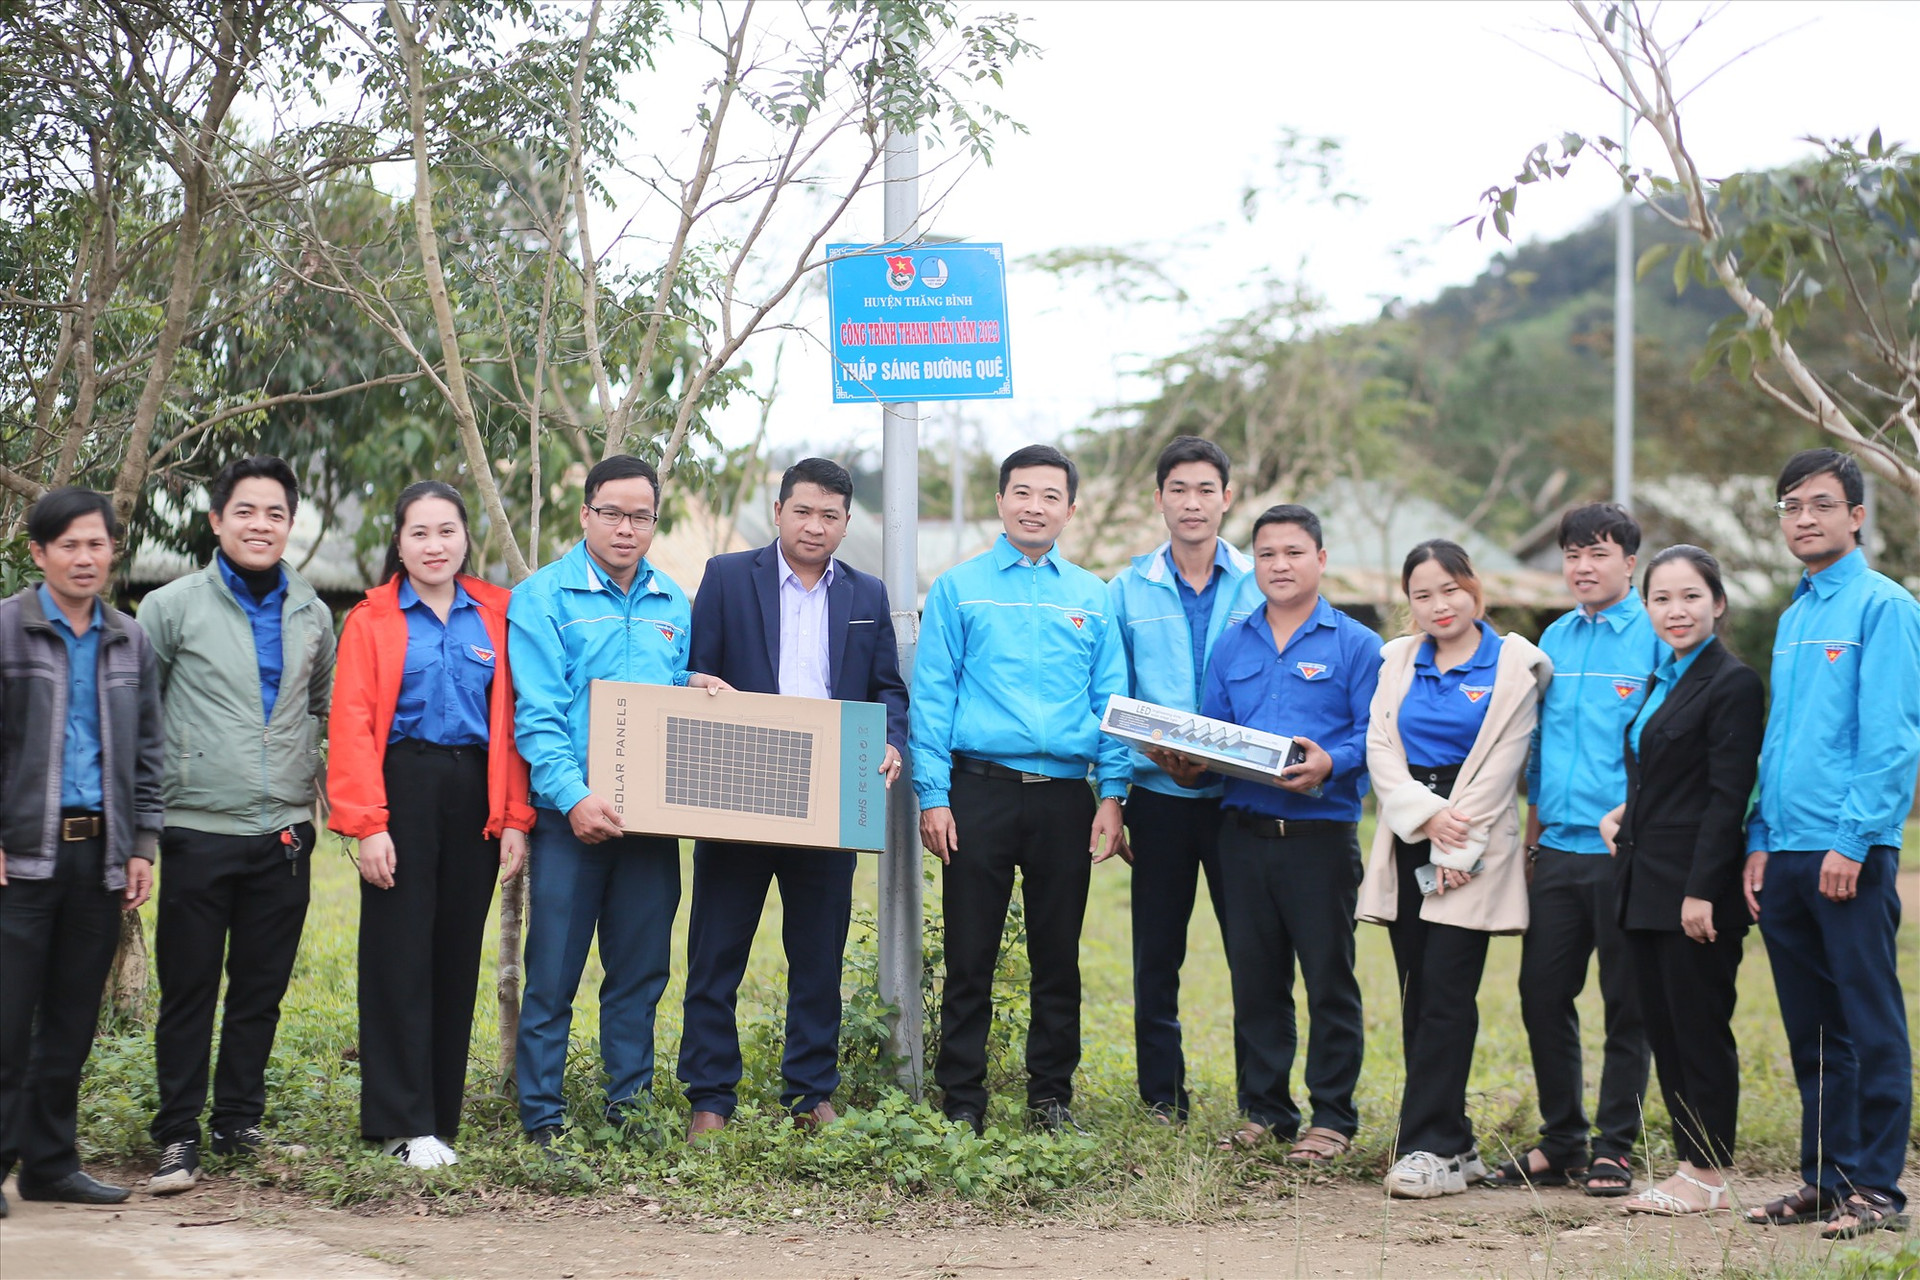 Trao tặng công trình thanh niên Thắp sáng đường quê tại xã A Tiêng, huyện Tây Giang